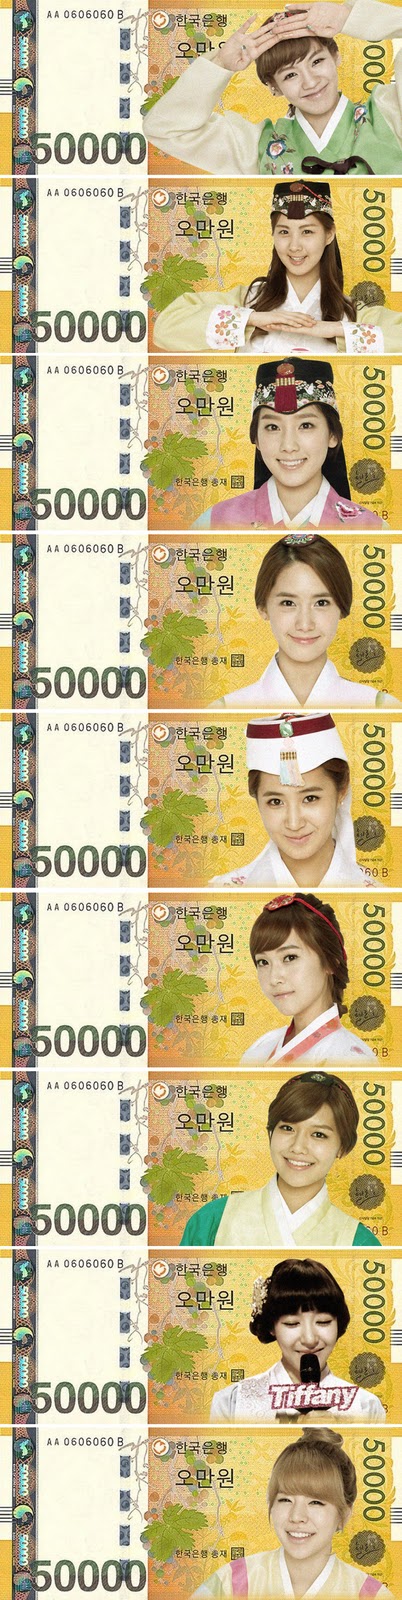 [FANTAKEN][26-01-2012] Hình ảnh SNSD trên những tờ tiền Hàn Quốc! Snsd-new-year-money